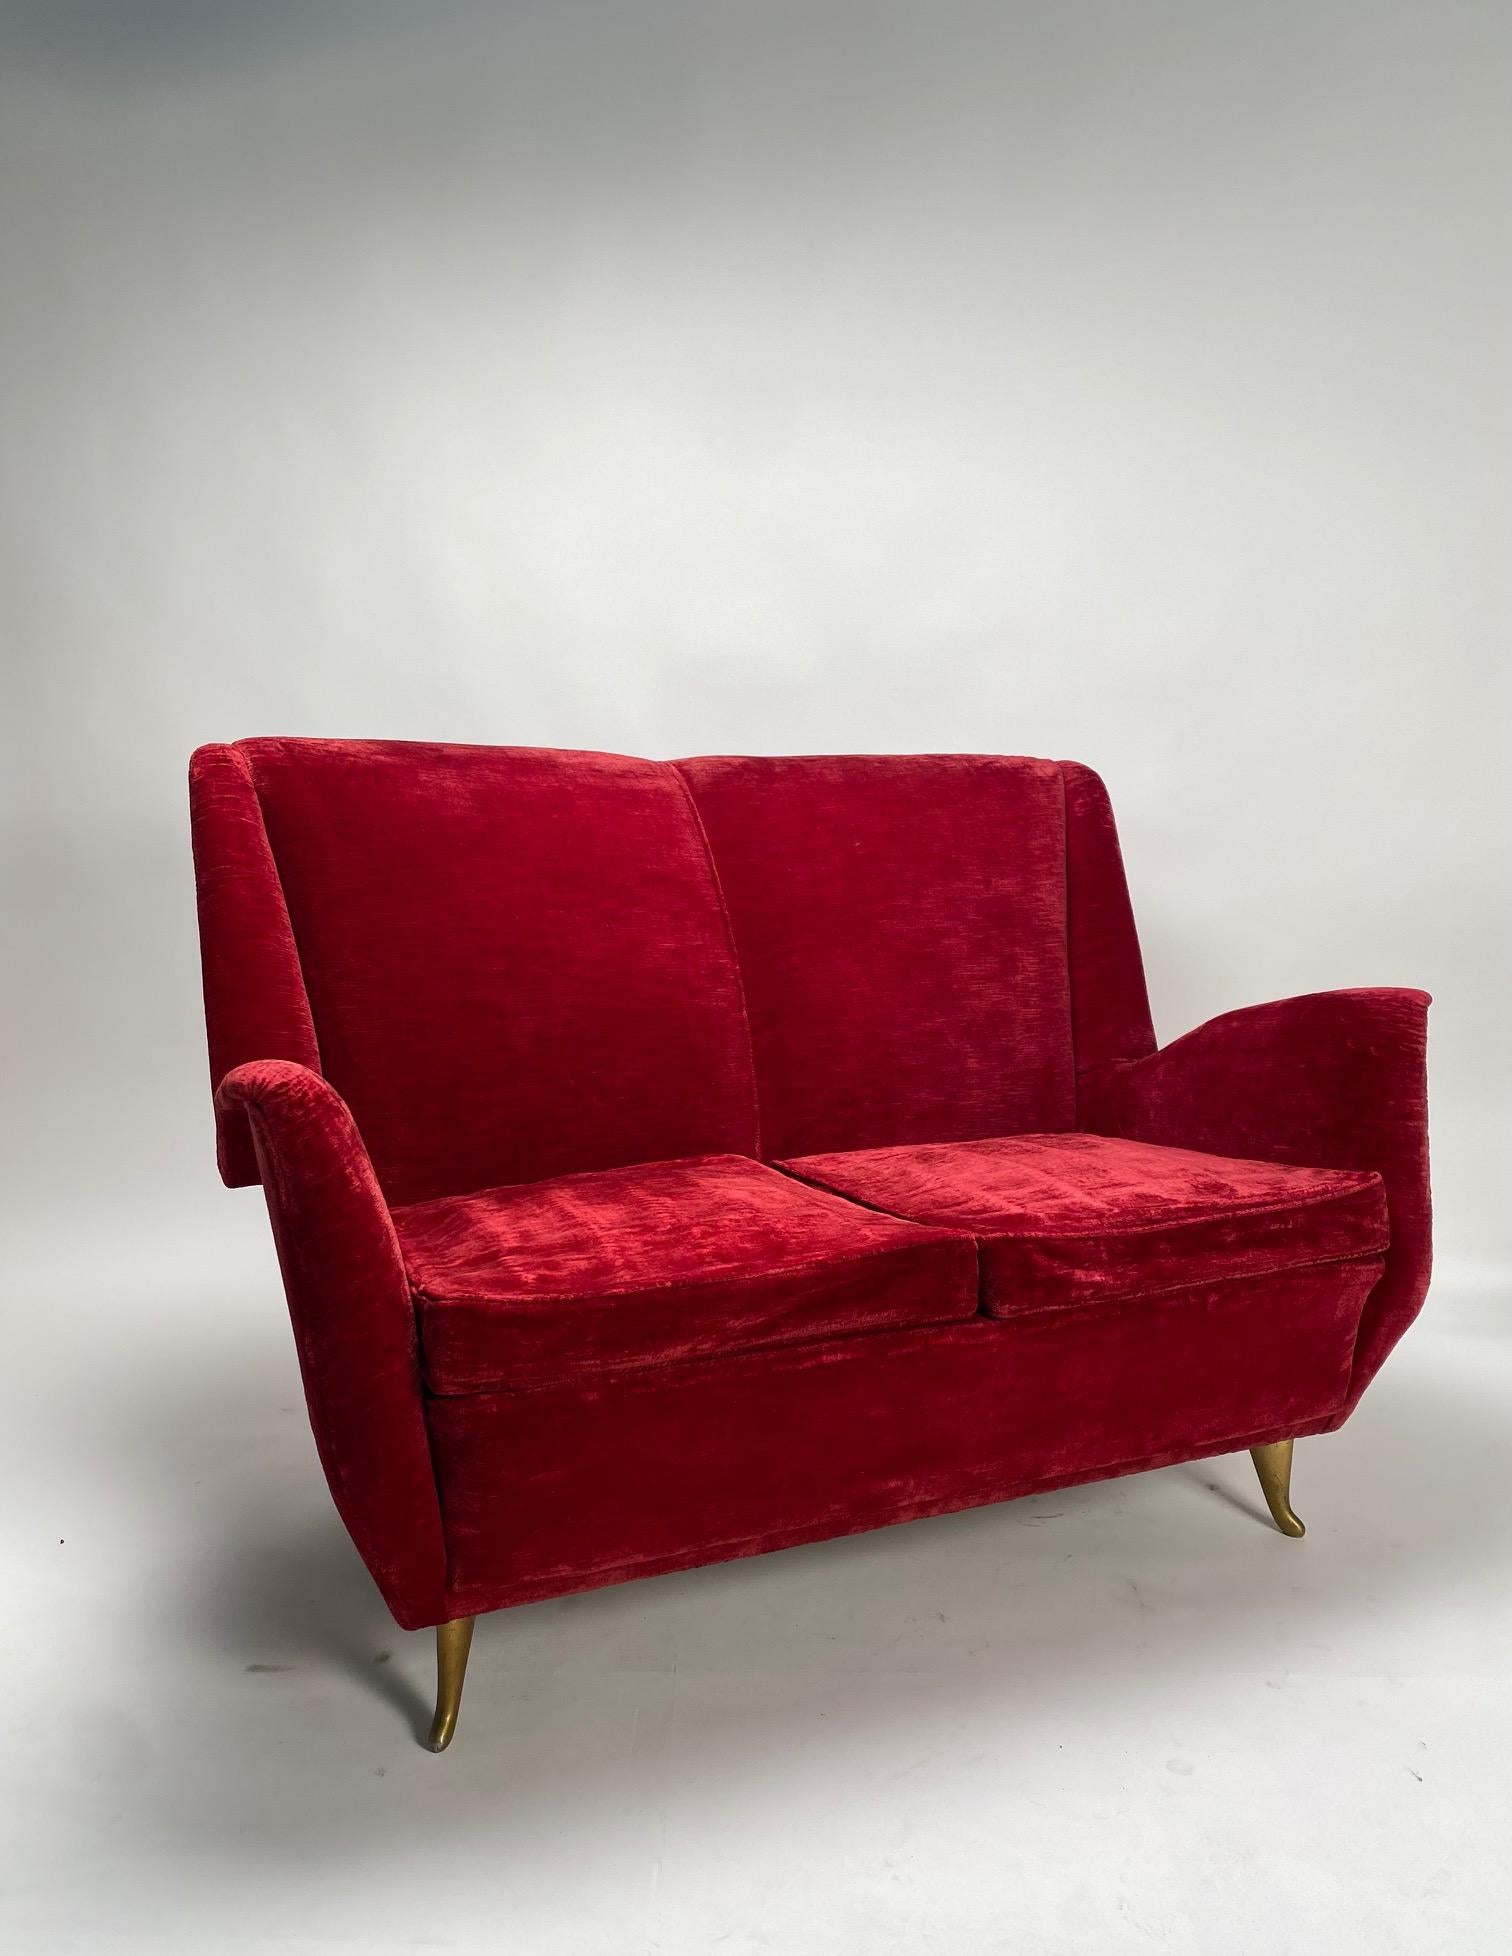 Italian Two-Seater Red Sofa, Produced by I.S.A. Bergamo, Att. Gio Ponti, 1950s In Fair Condition For Sale In Argelato, BO